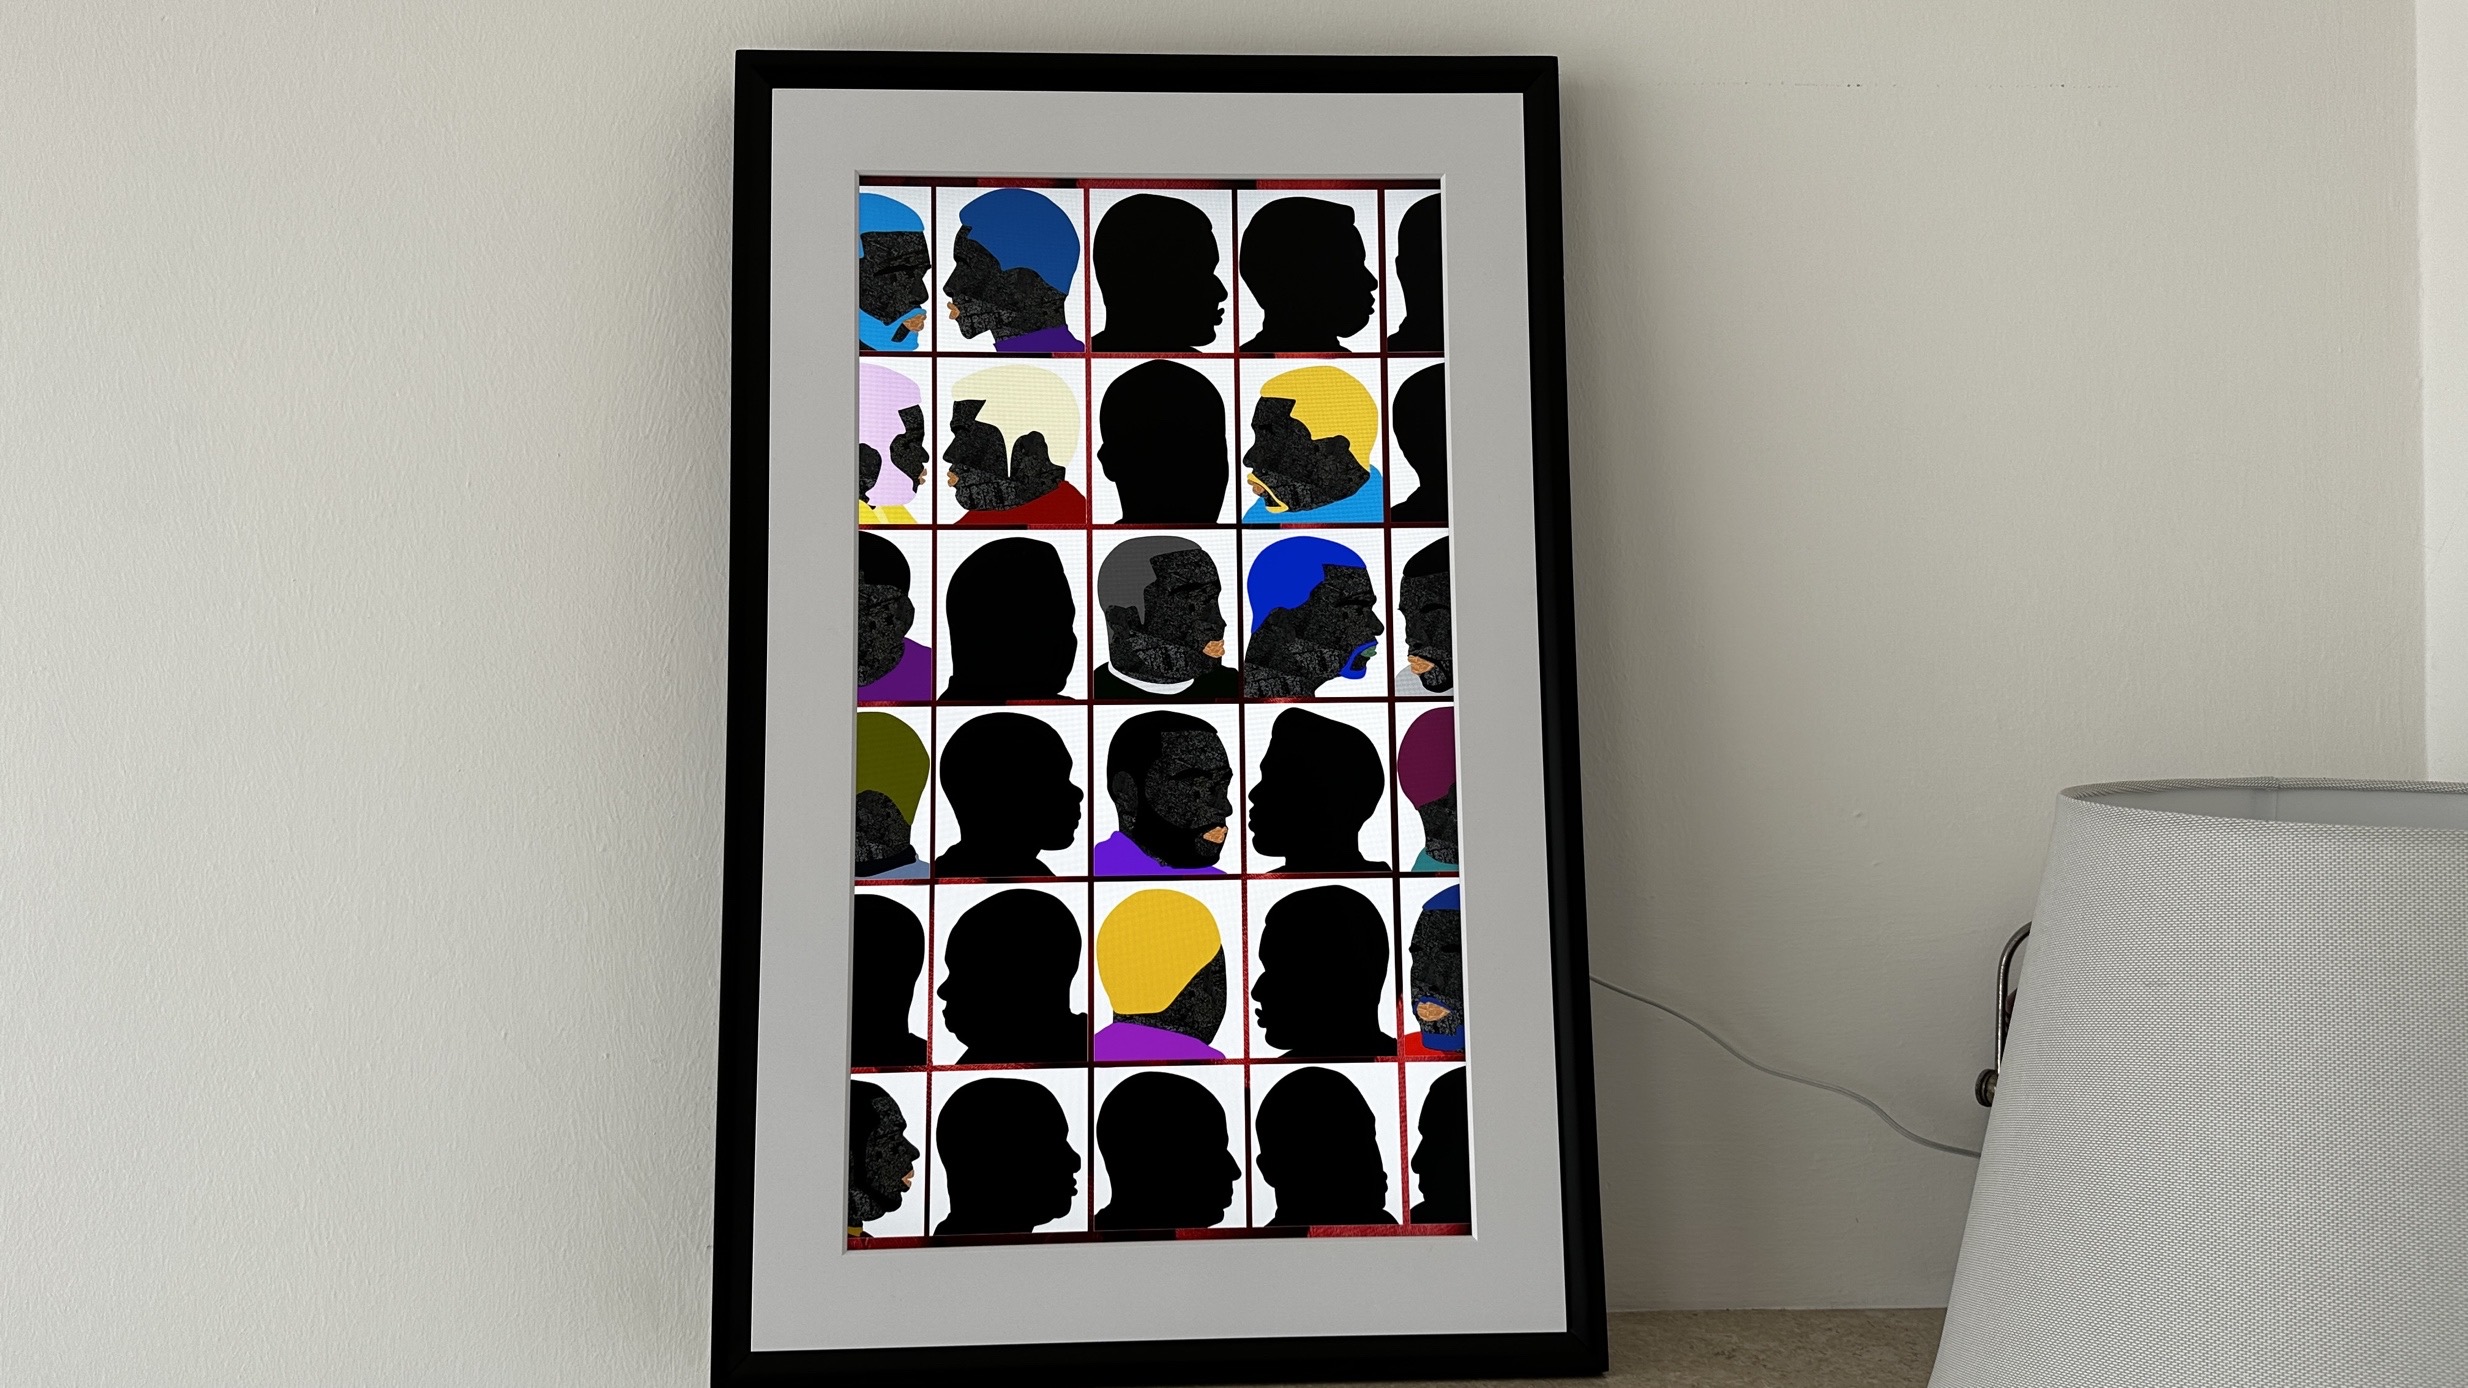 Recensione Meural Canvas II, il quadro digitale che porta l'arte in casa